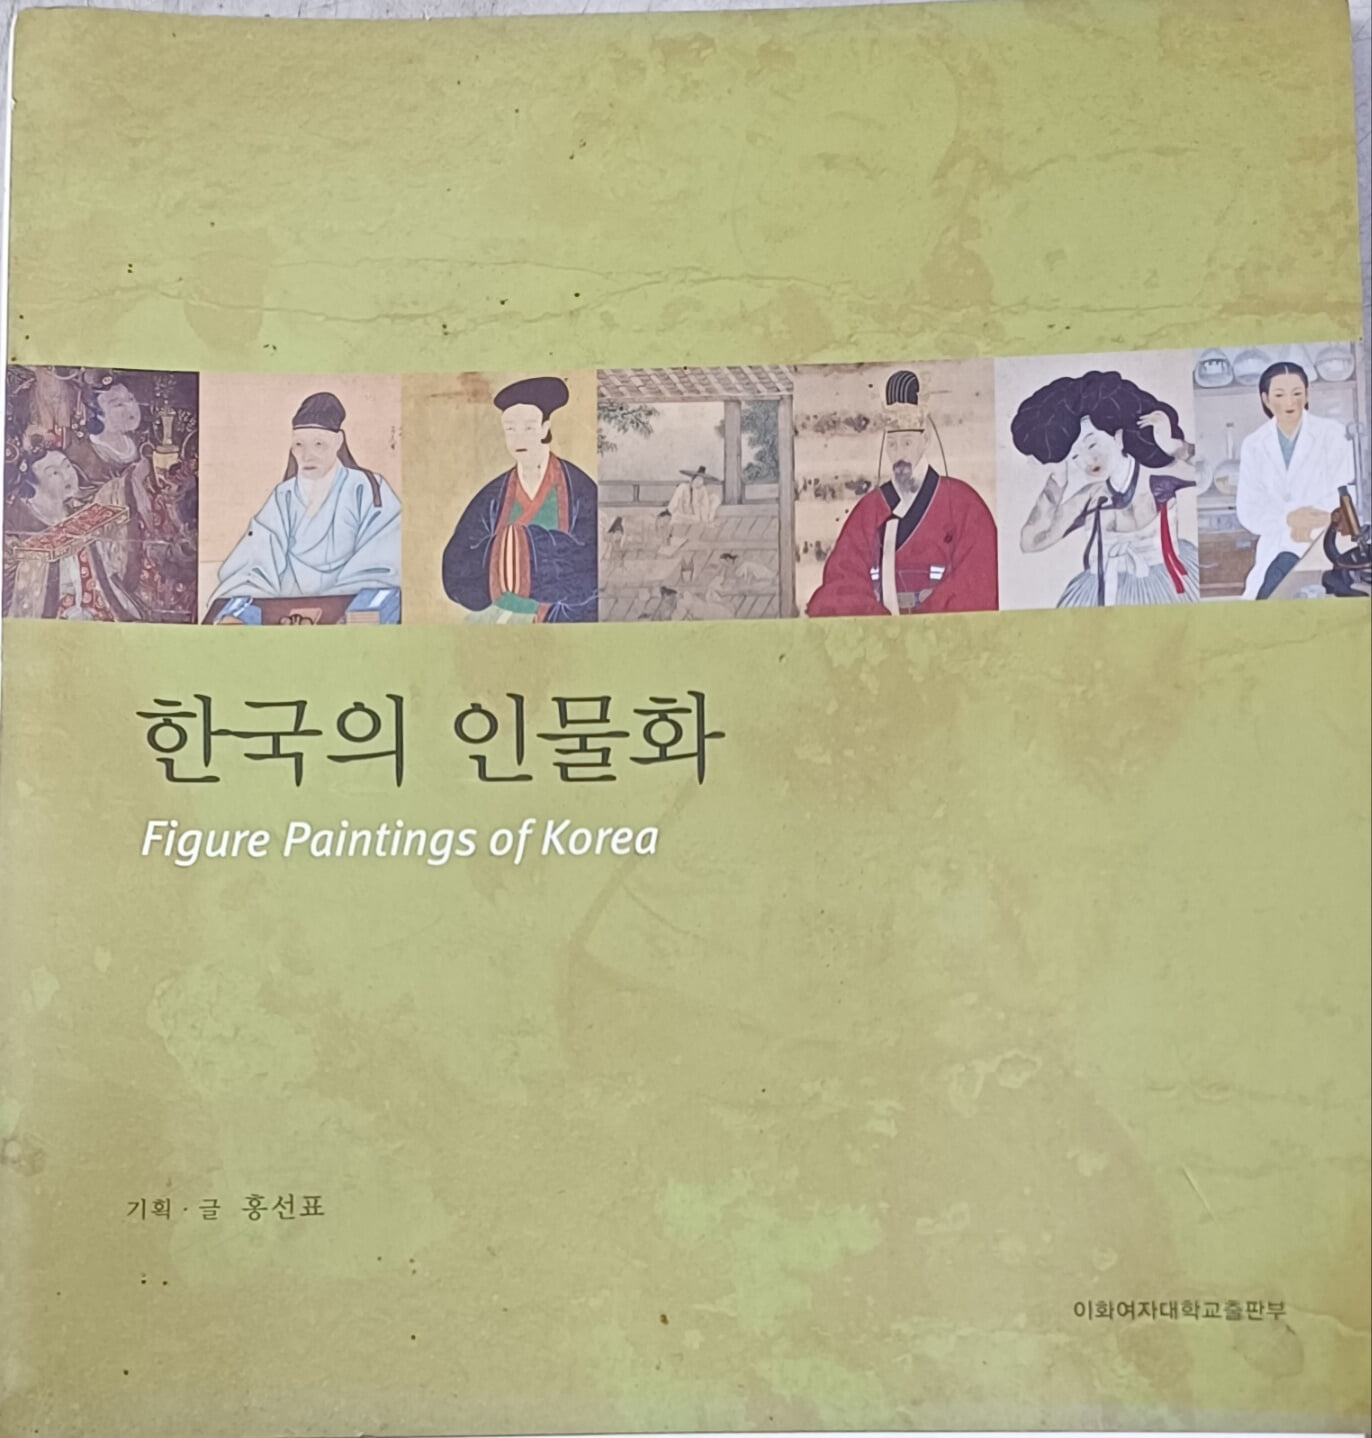 한국의 인물화 -2006년 이화 포토 다이어리 /홍선표/2005/이화여자대학교출판부/앞장안쪽물얼룩흔적